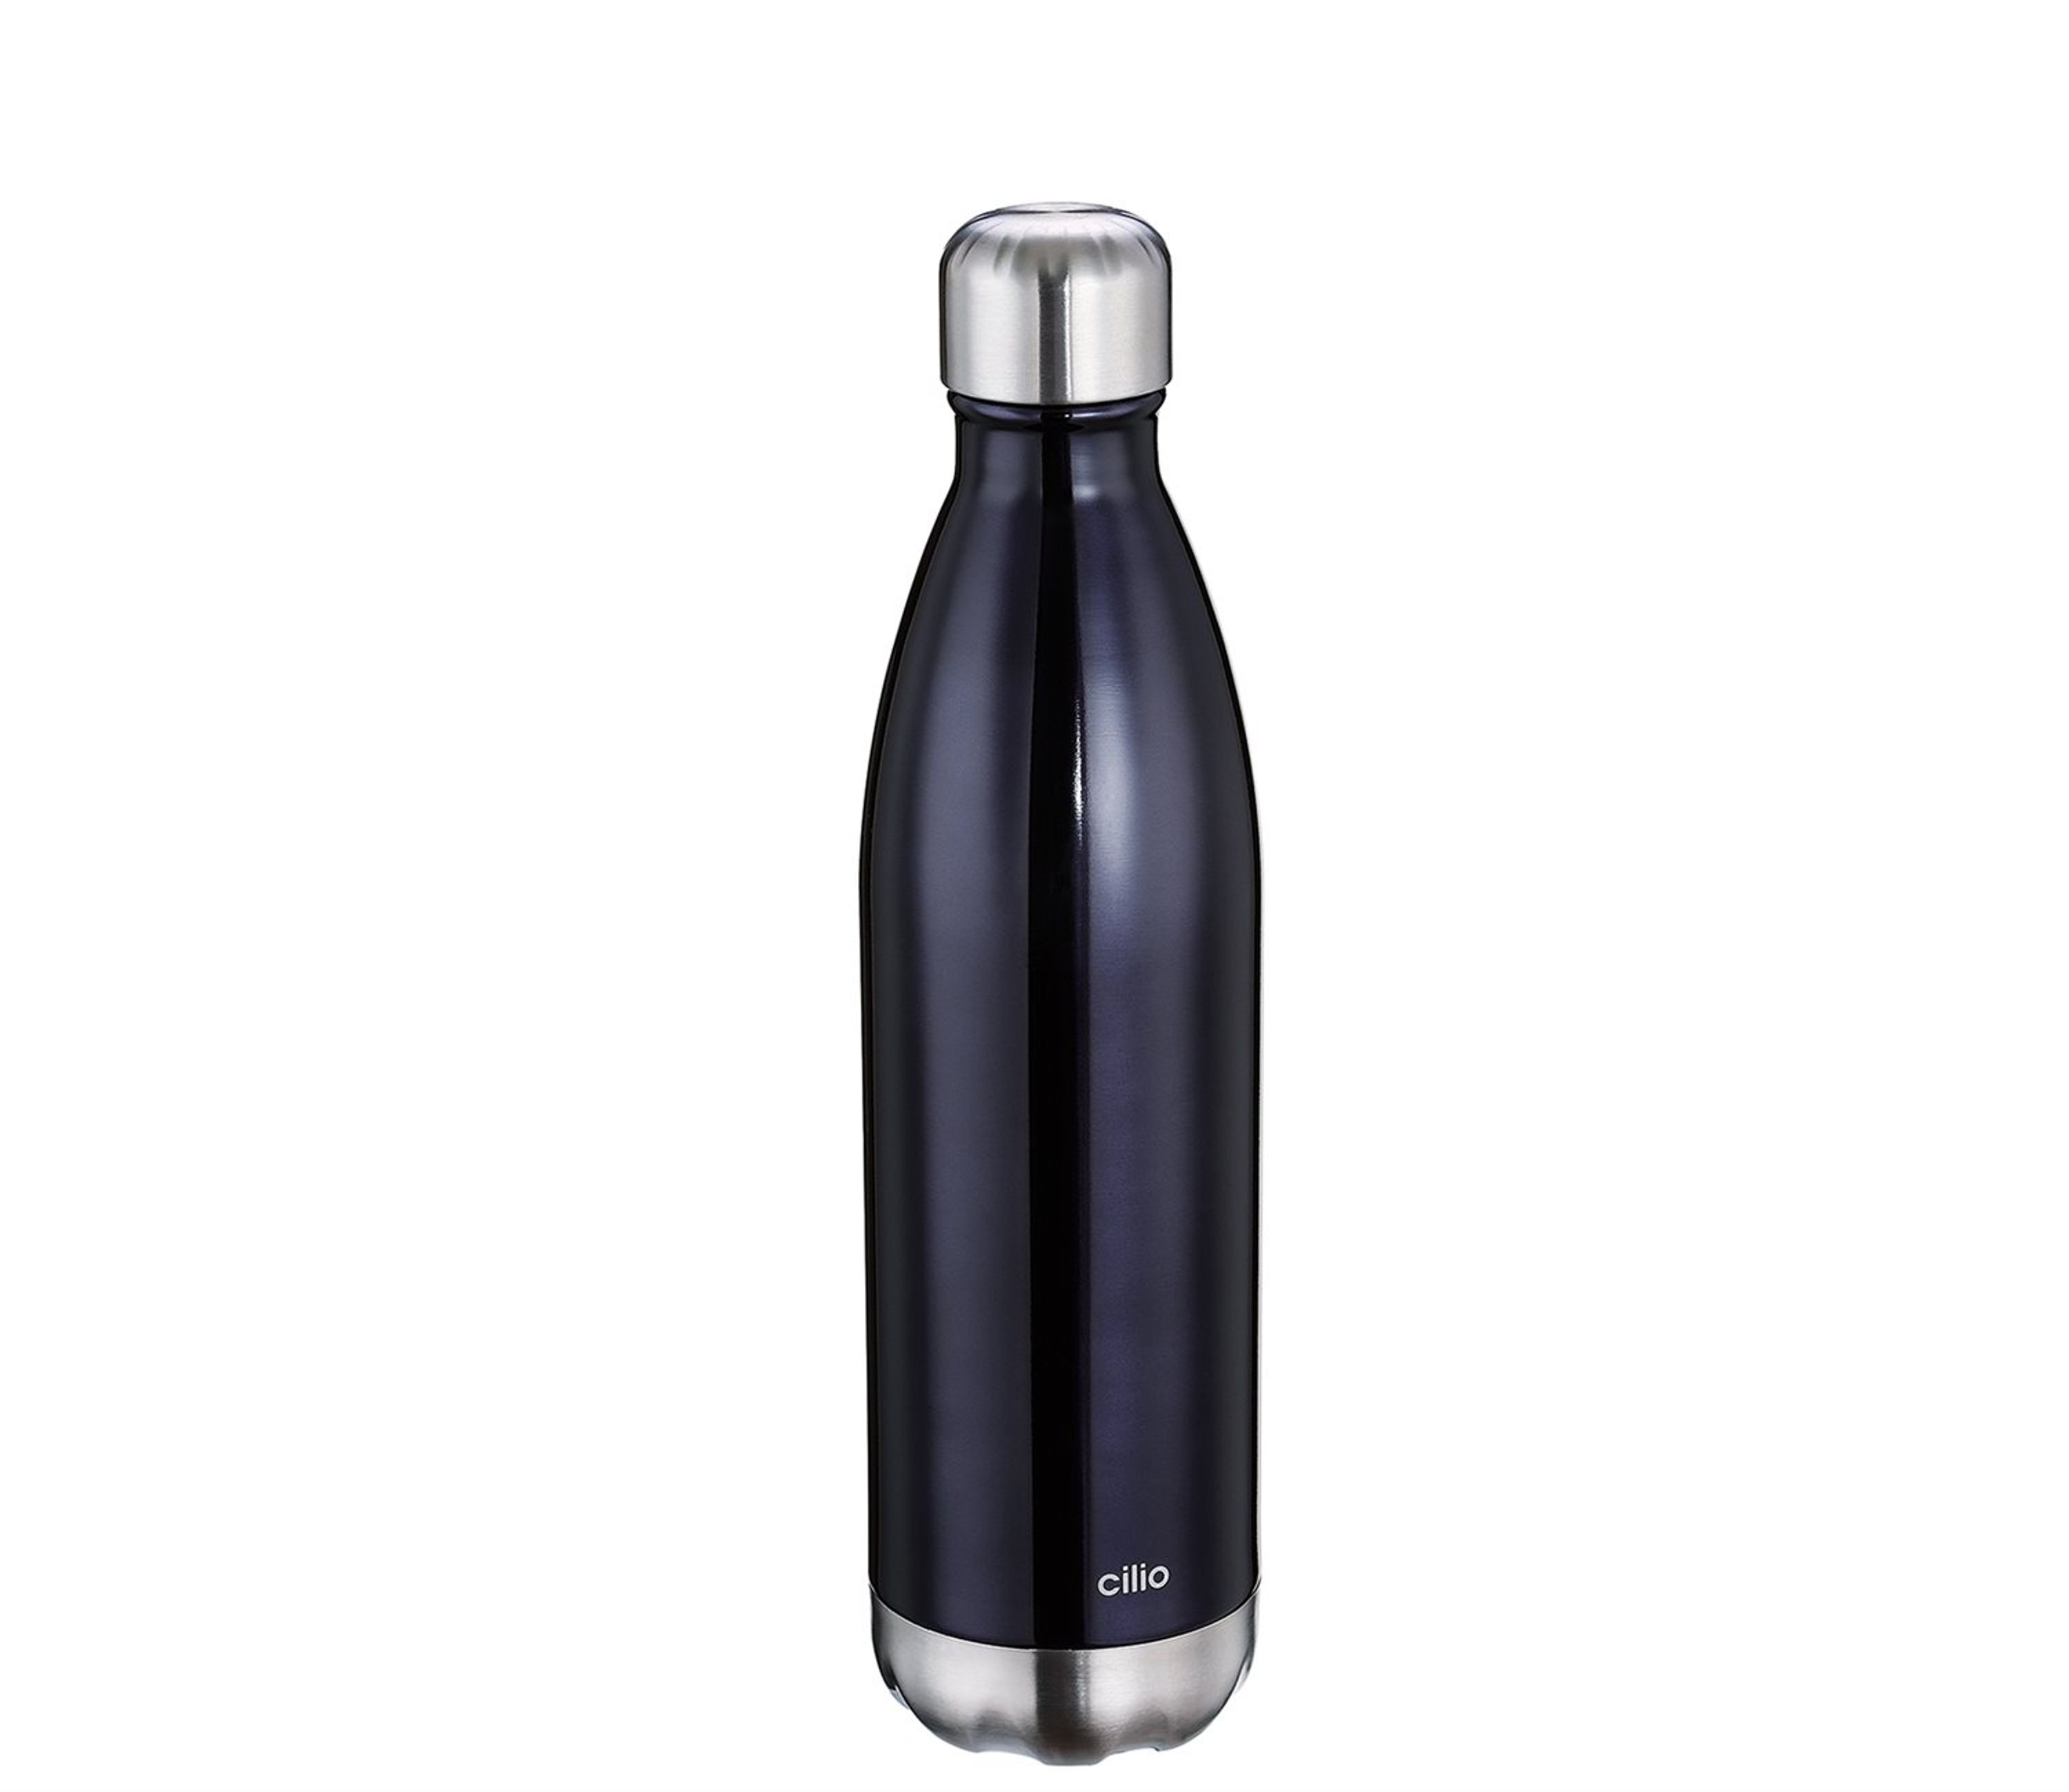 cilio Isolierflasche ELEGANTE schwarz, 750 ml